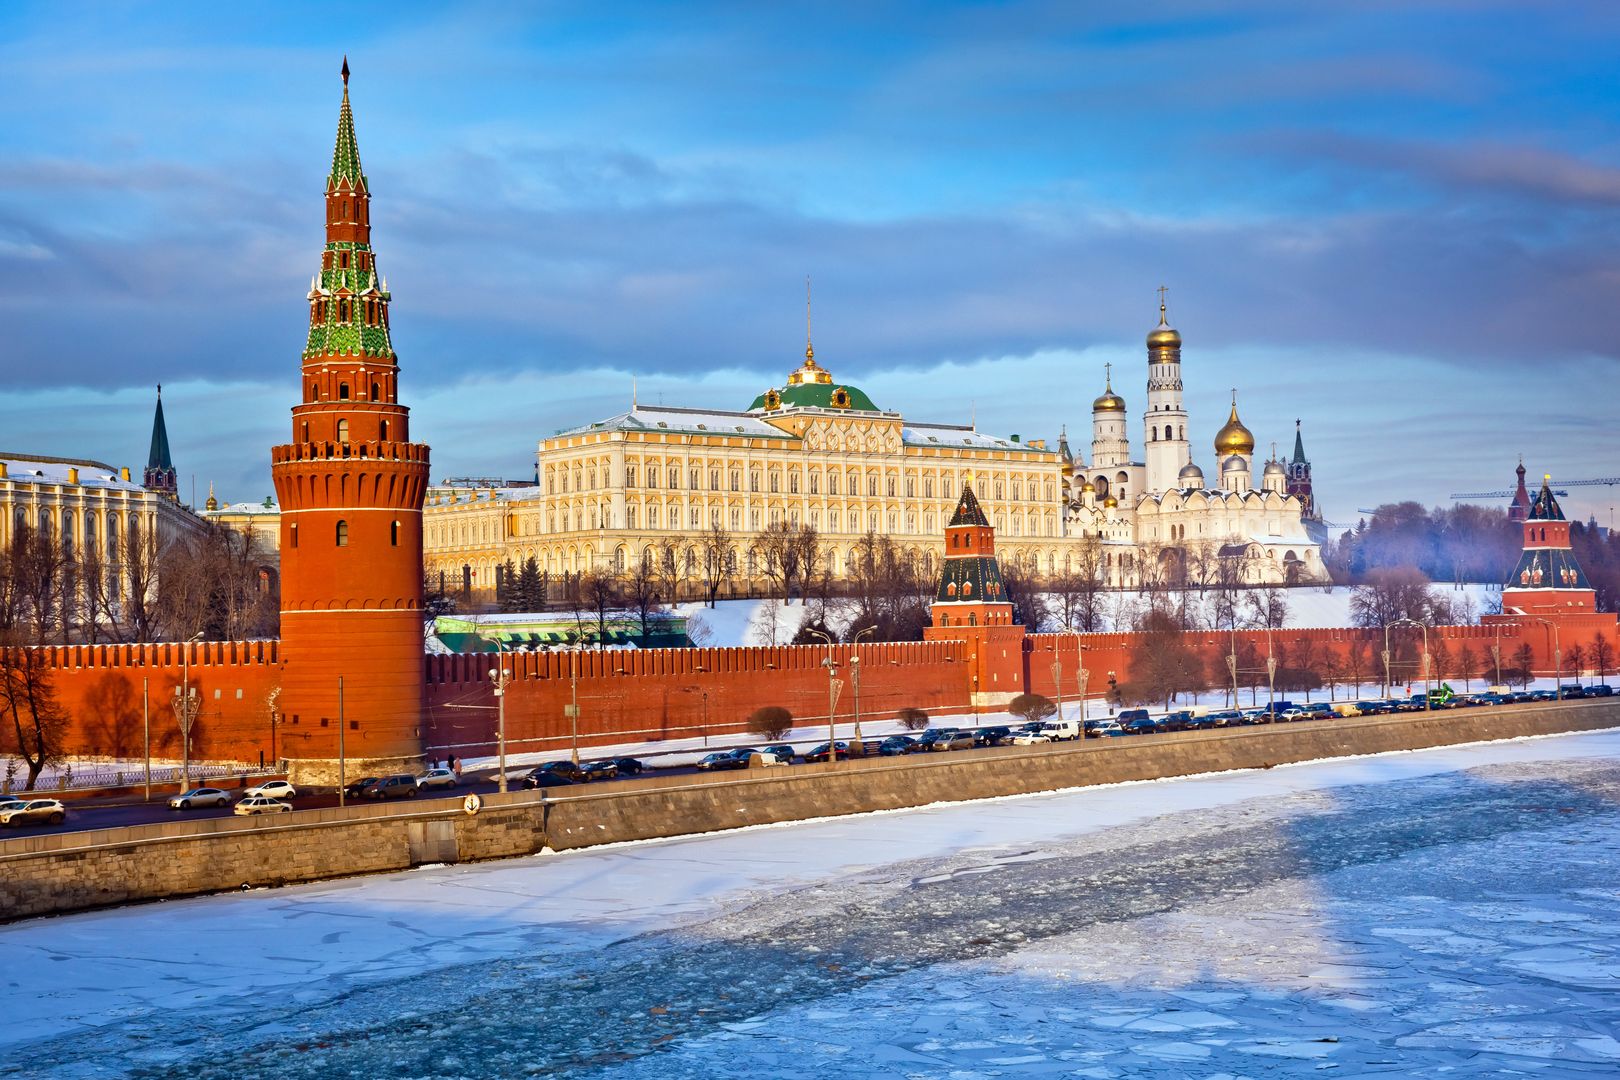 Władimir Putin zbada podziemia Kremla. Będzie szukać skarbów